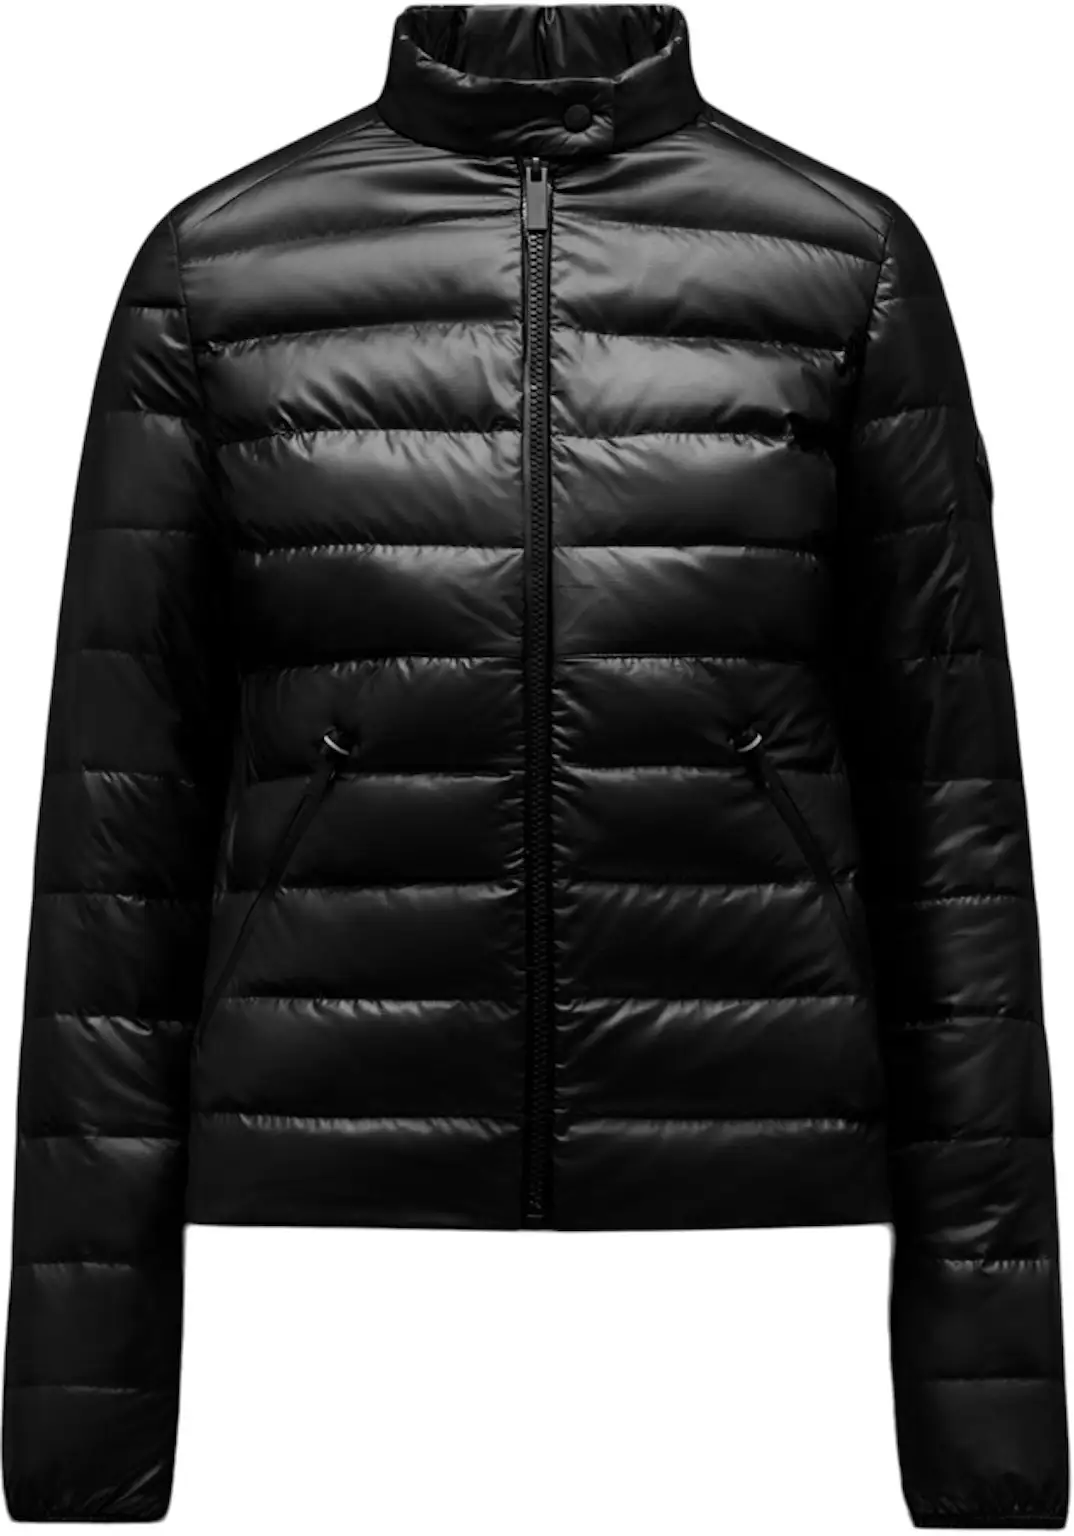 Moncler Women's Larmor Short Down Jacket Black - FR